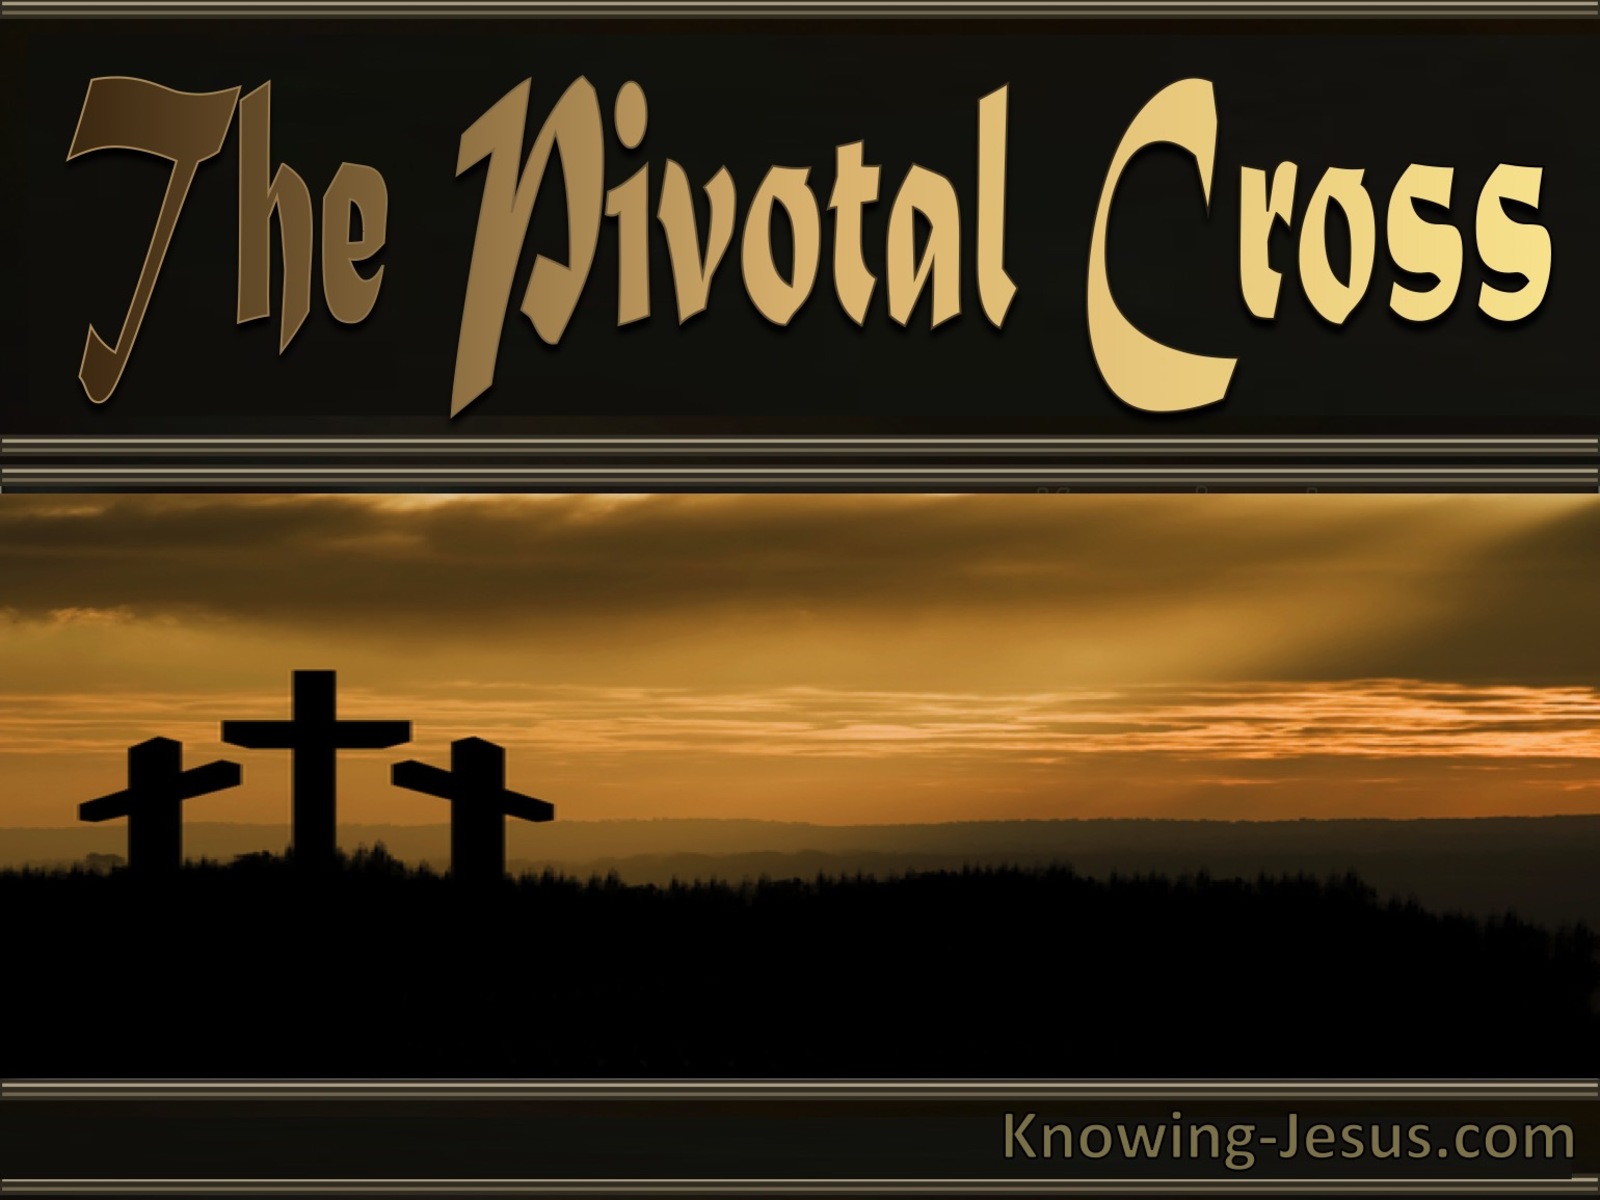 The Pivotal Cross (devotional)11-01 (beige)